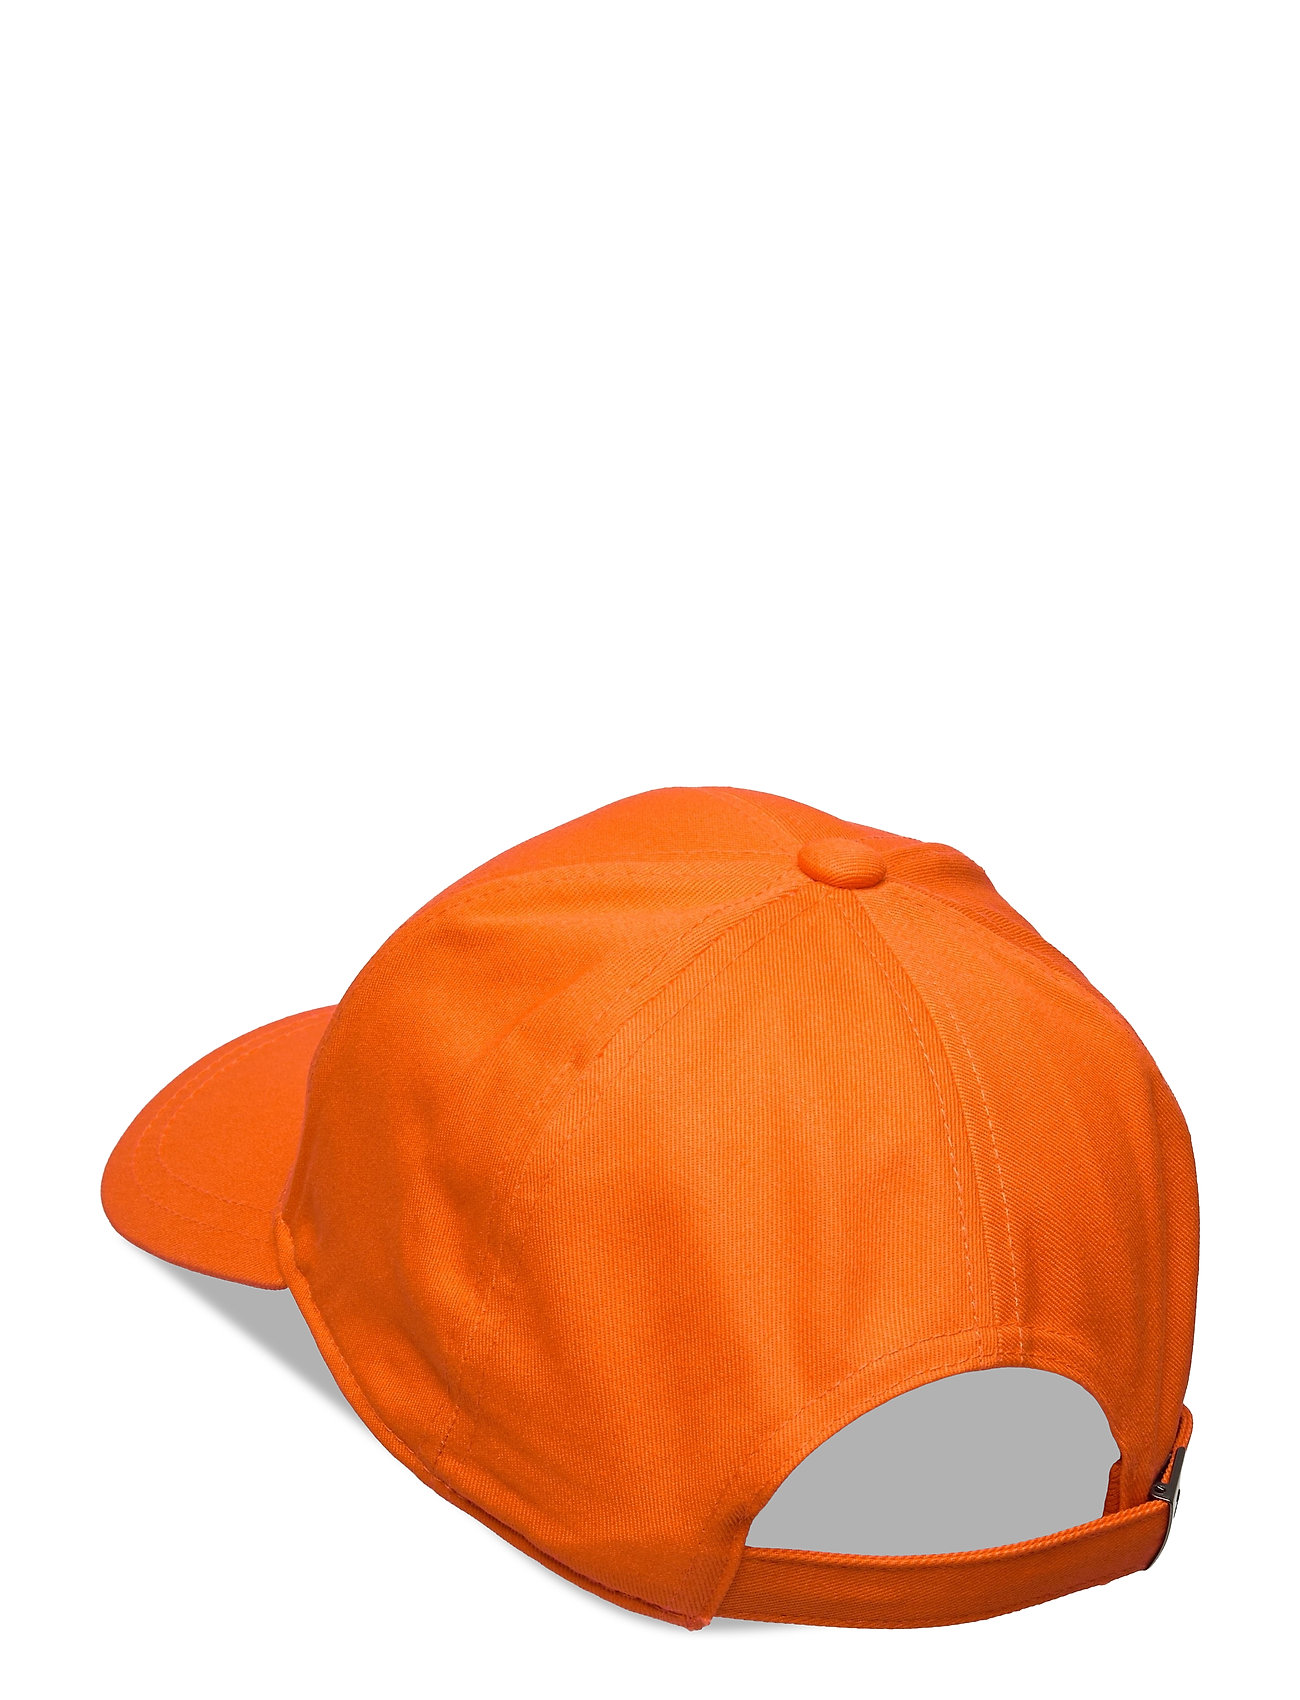 Jr Retro Cap Accessories Headwear Caps Orange Peak Performance